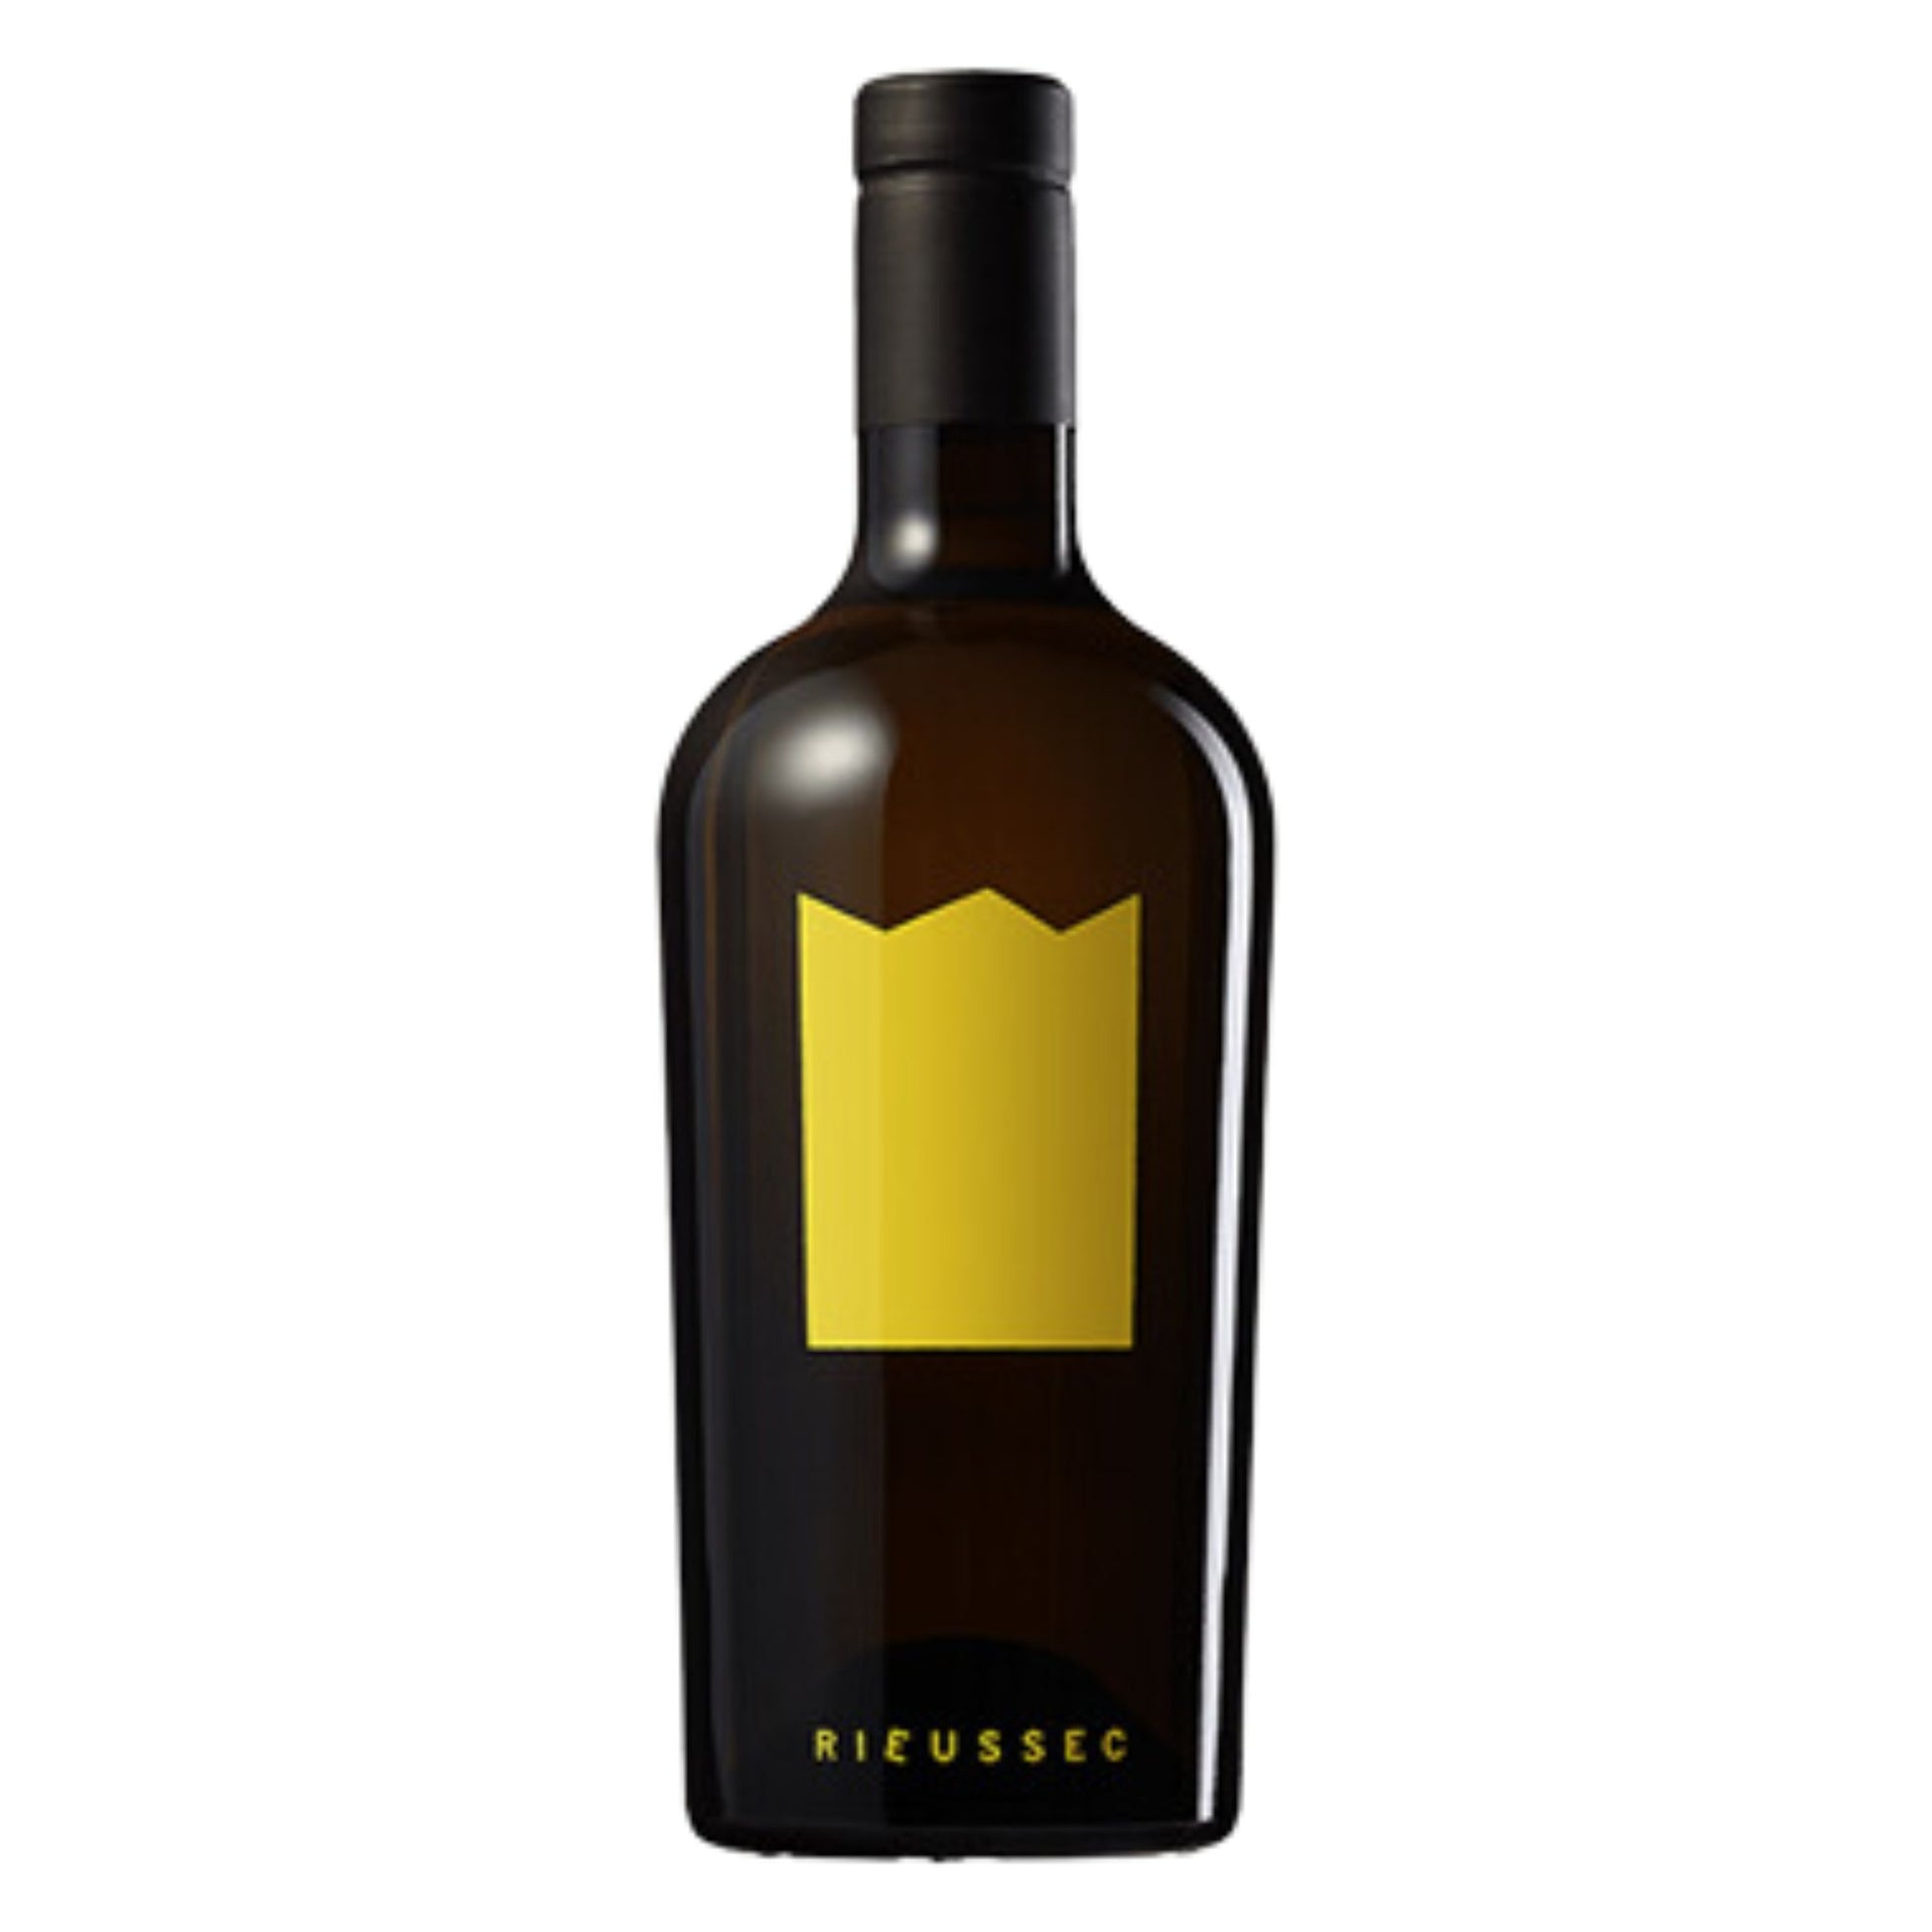 Rieussec - Grand Vin Pte Ltd